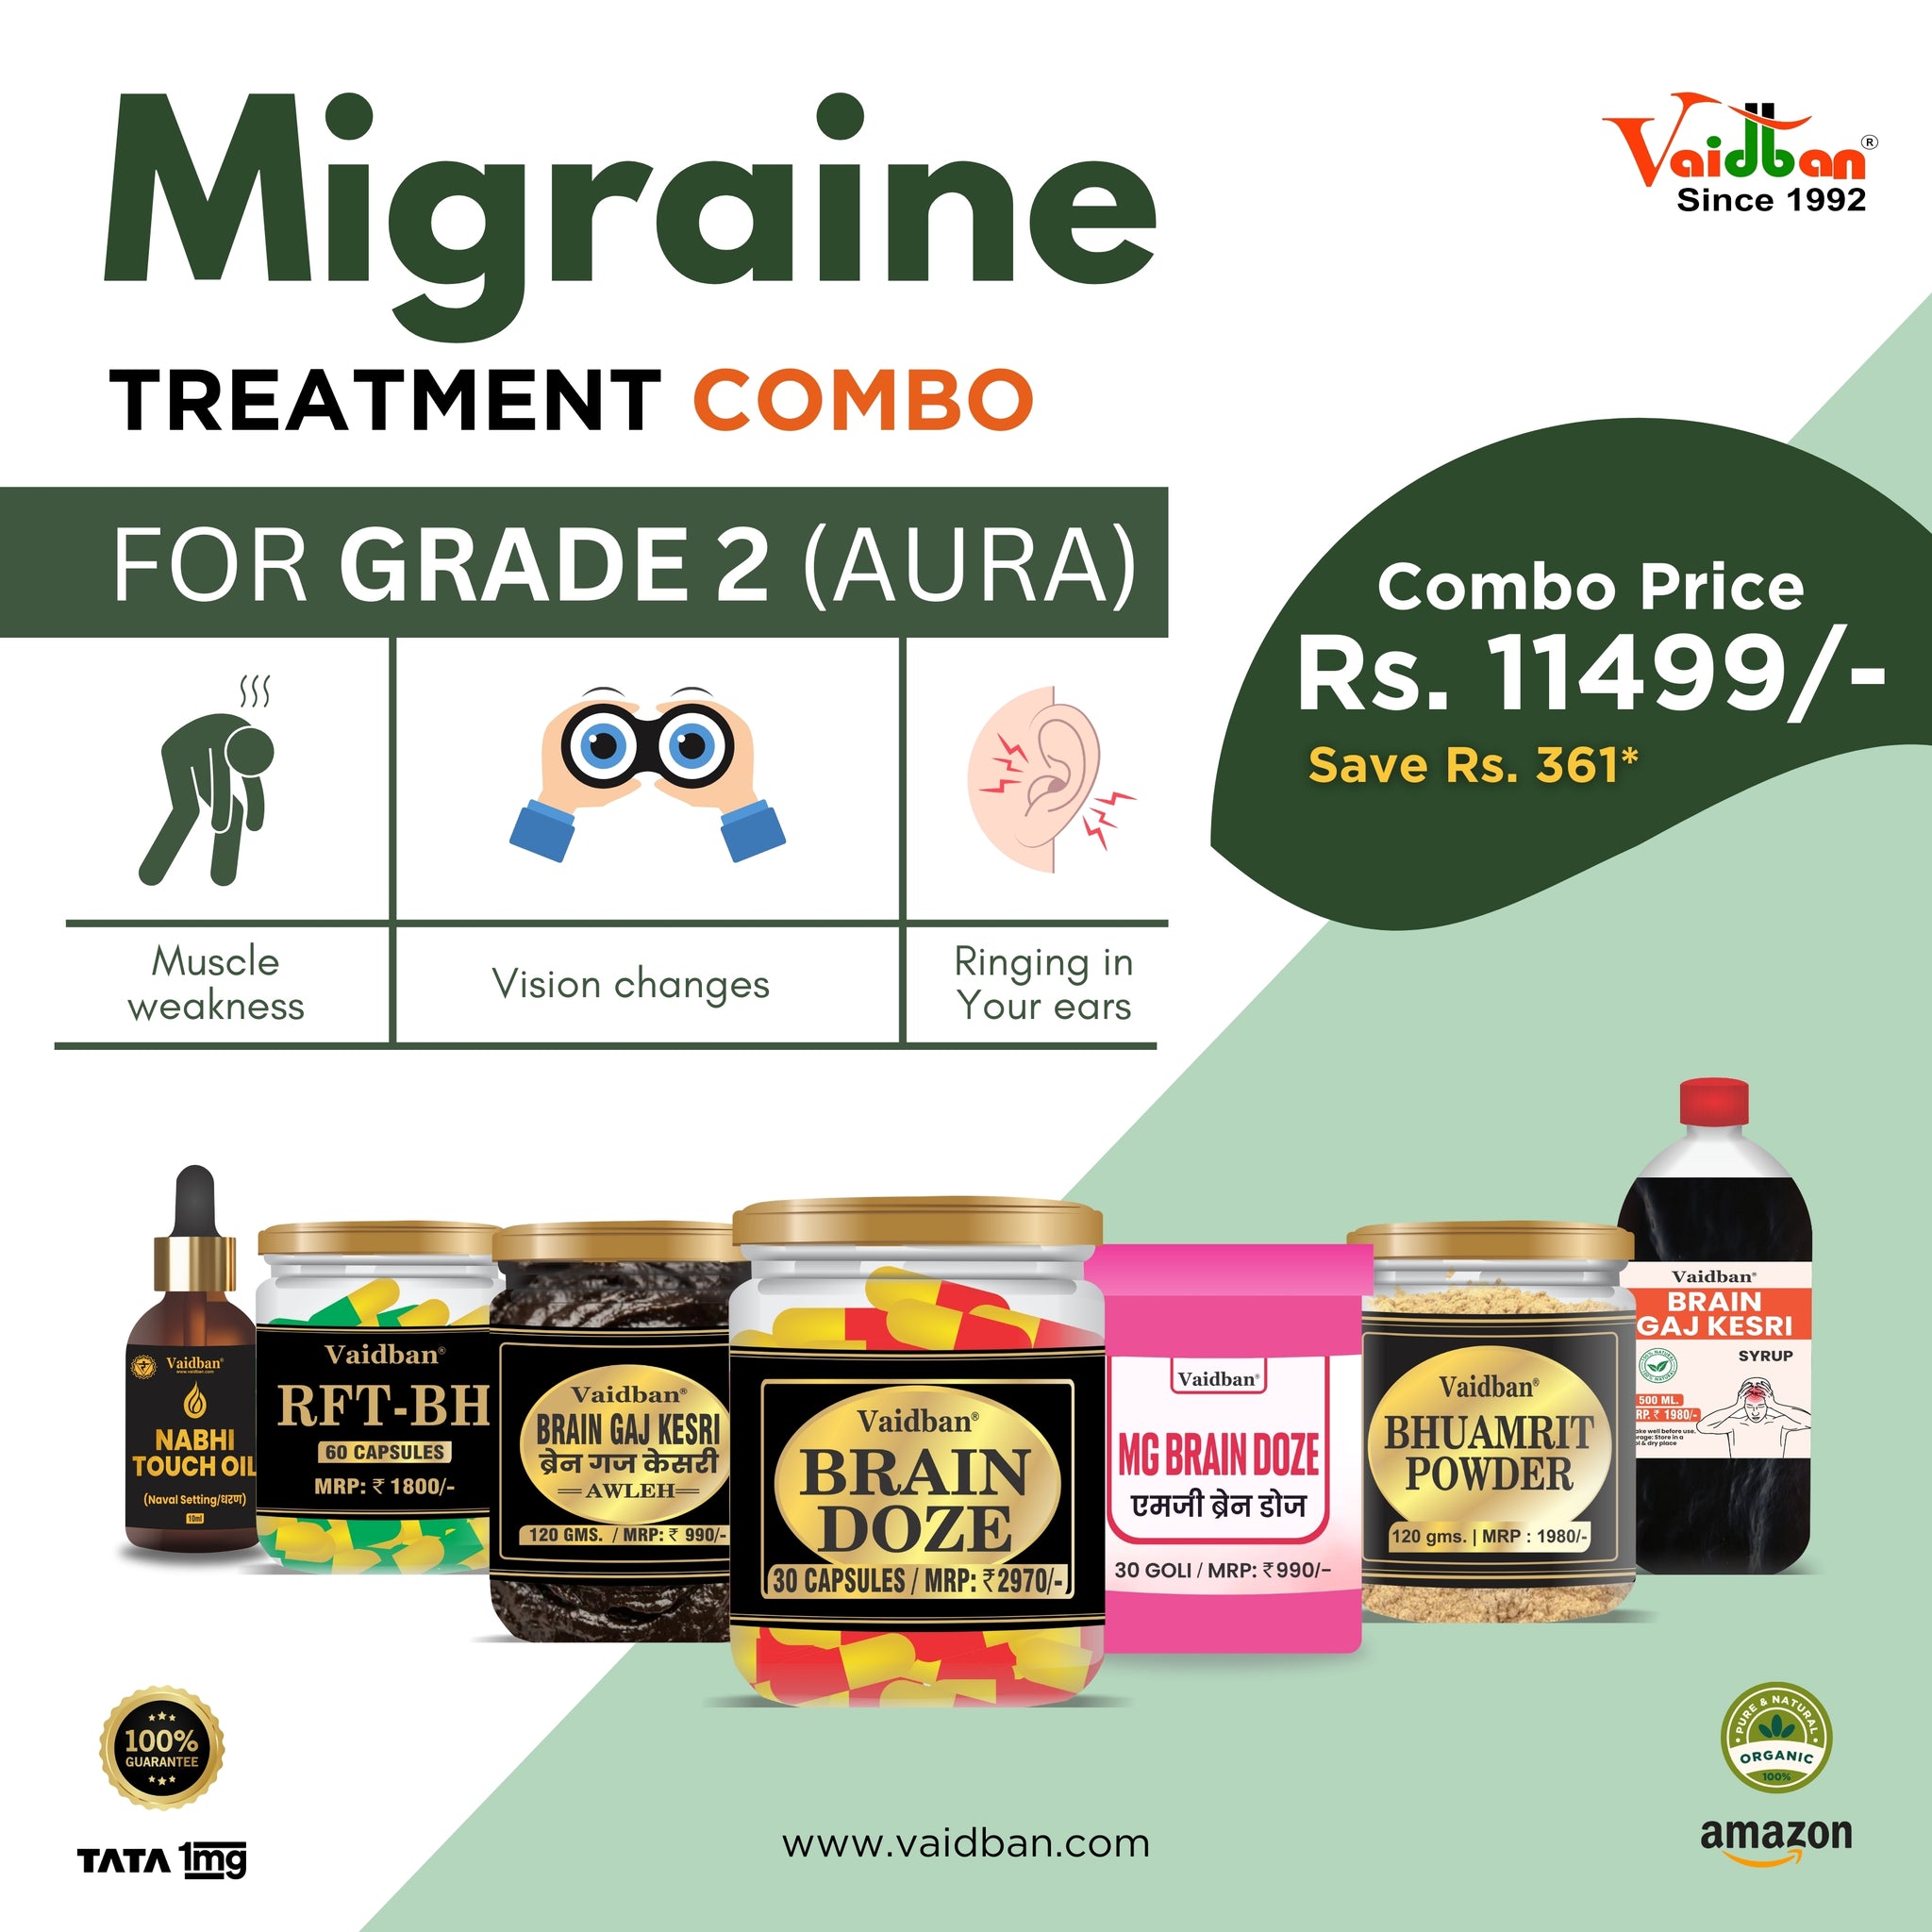 Vaidban Migraine Treatment Combo for Grade 2 (Aura)